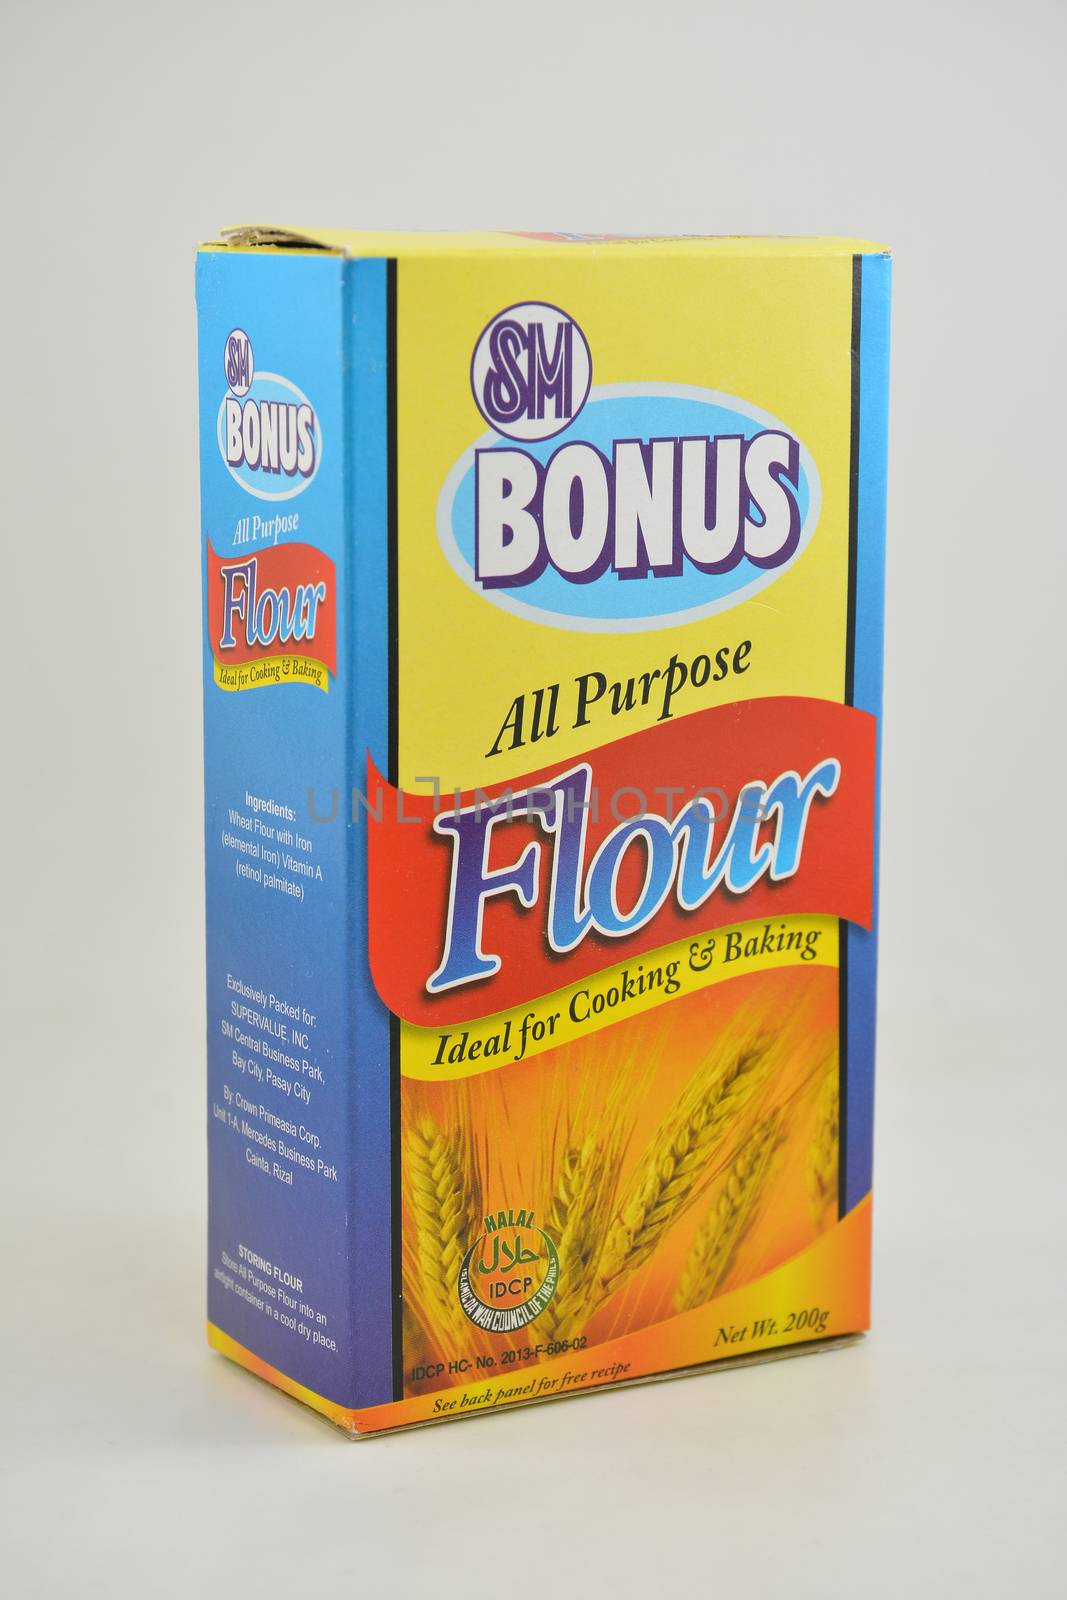 MANILA, PH - JUNE 26 - SM bonus all purpose flour on June 26, 2020 in Manila, Philippines.